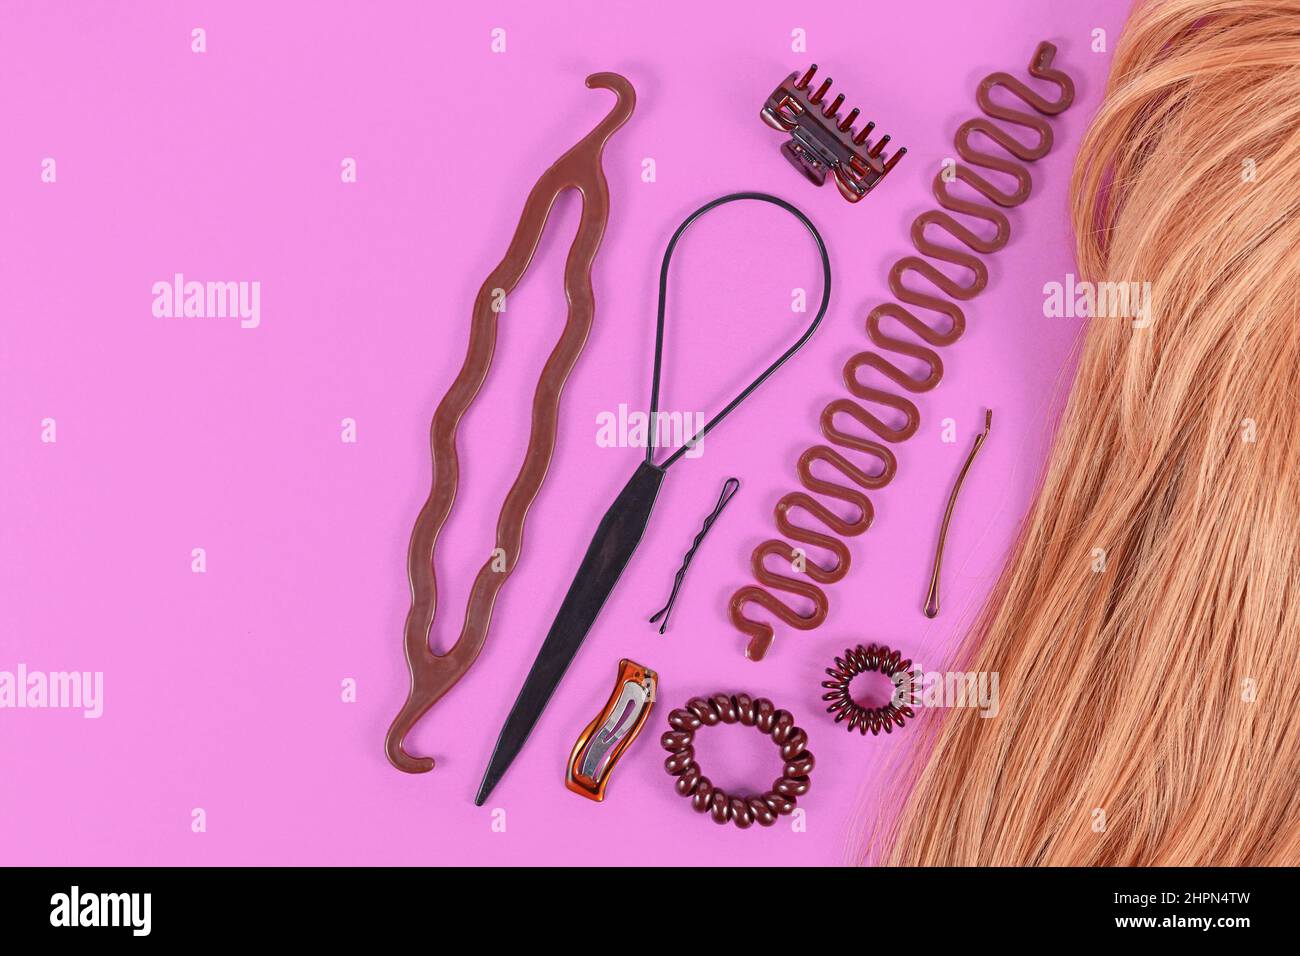 Set von Haar-Styling-Tools wie Bun Maker, Zopf-Werkzeug, Pferdeschwanz-Stil Maker, Haarclip, Gummibänder und Stifte neben blondem Haar mit Kopierraum Stockfoto